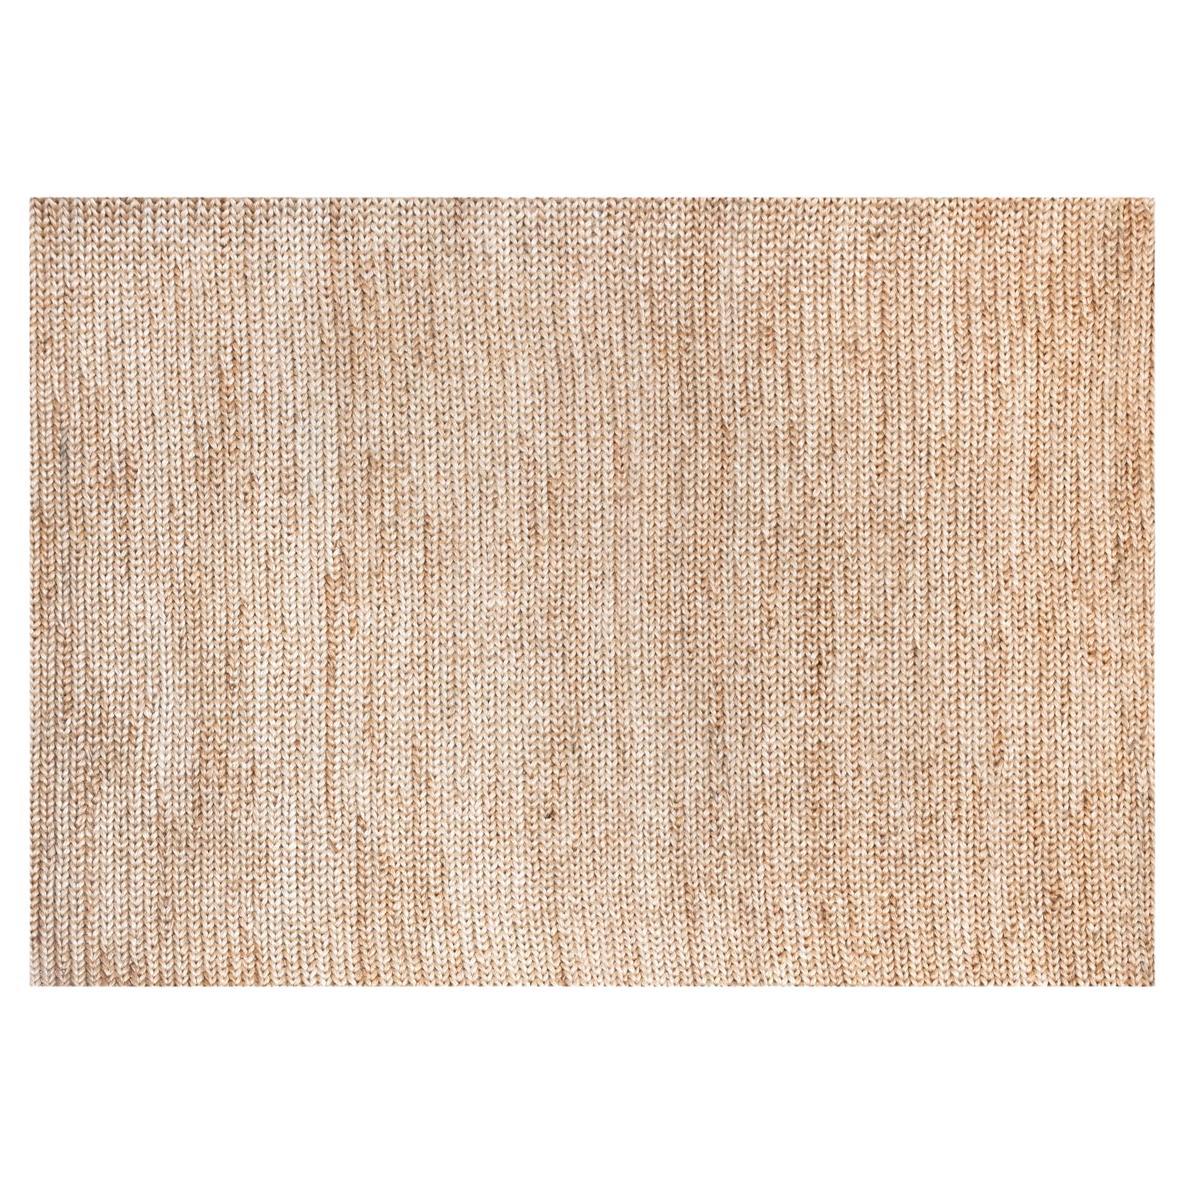 Modern Handwoven Jute Carpet Rug Natural Light Brown Wheat Spike